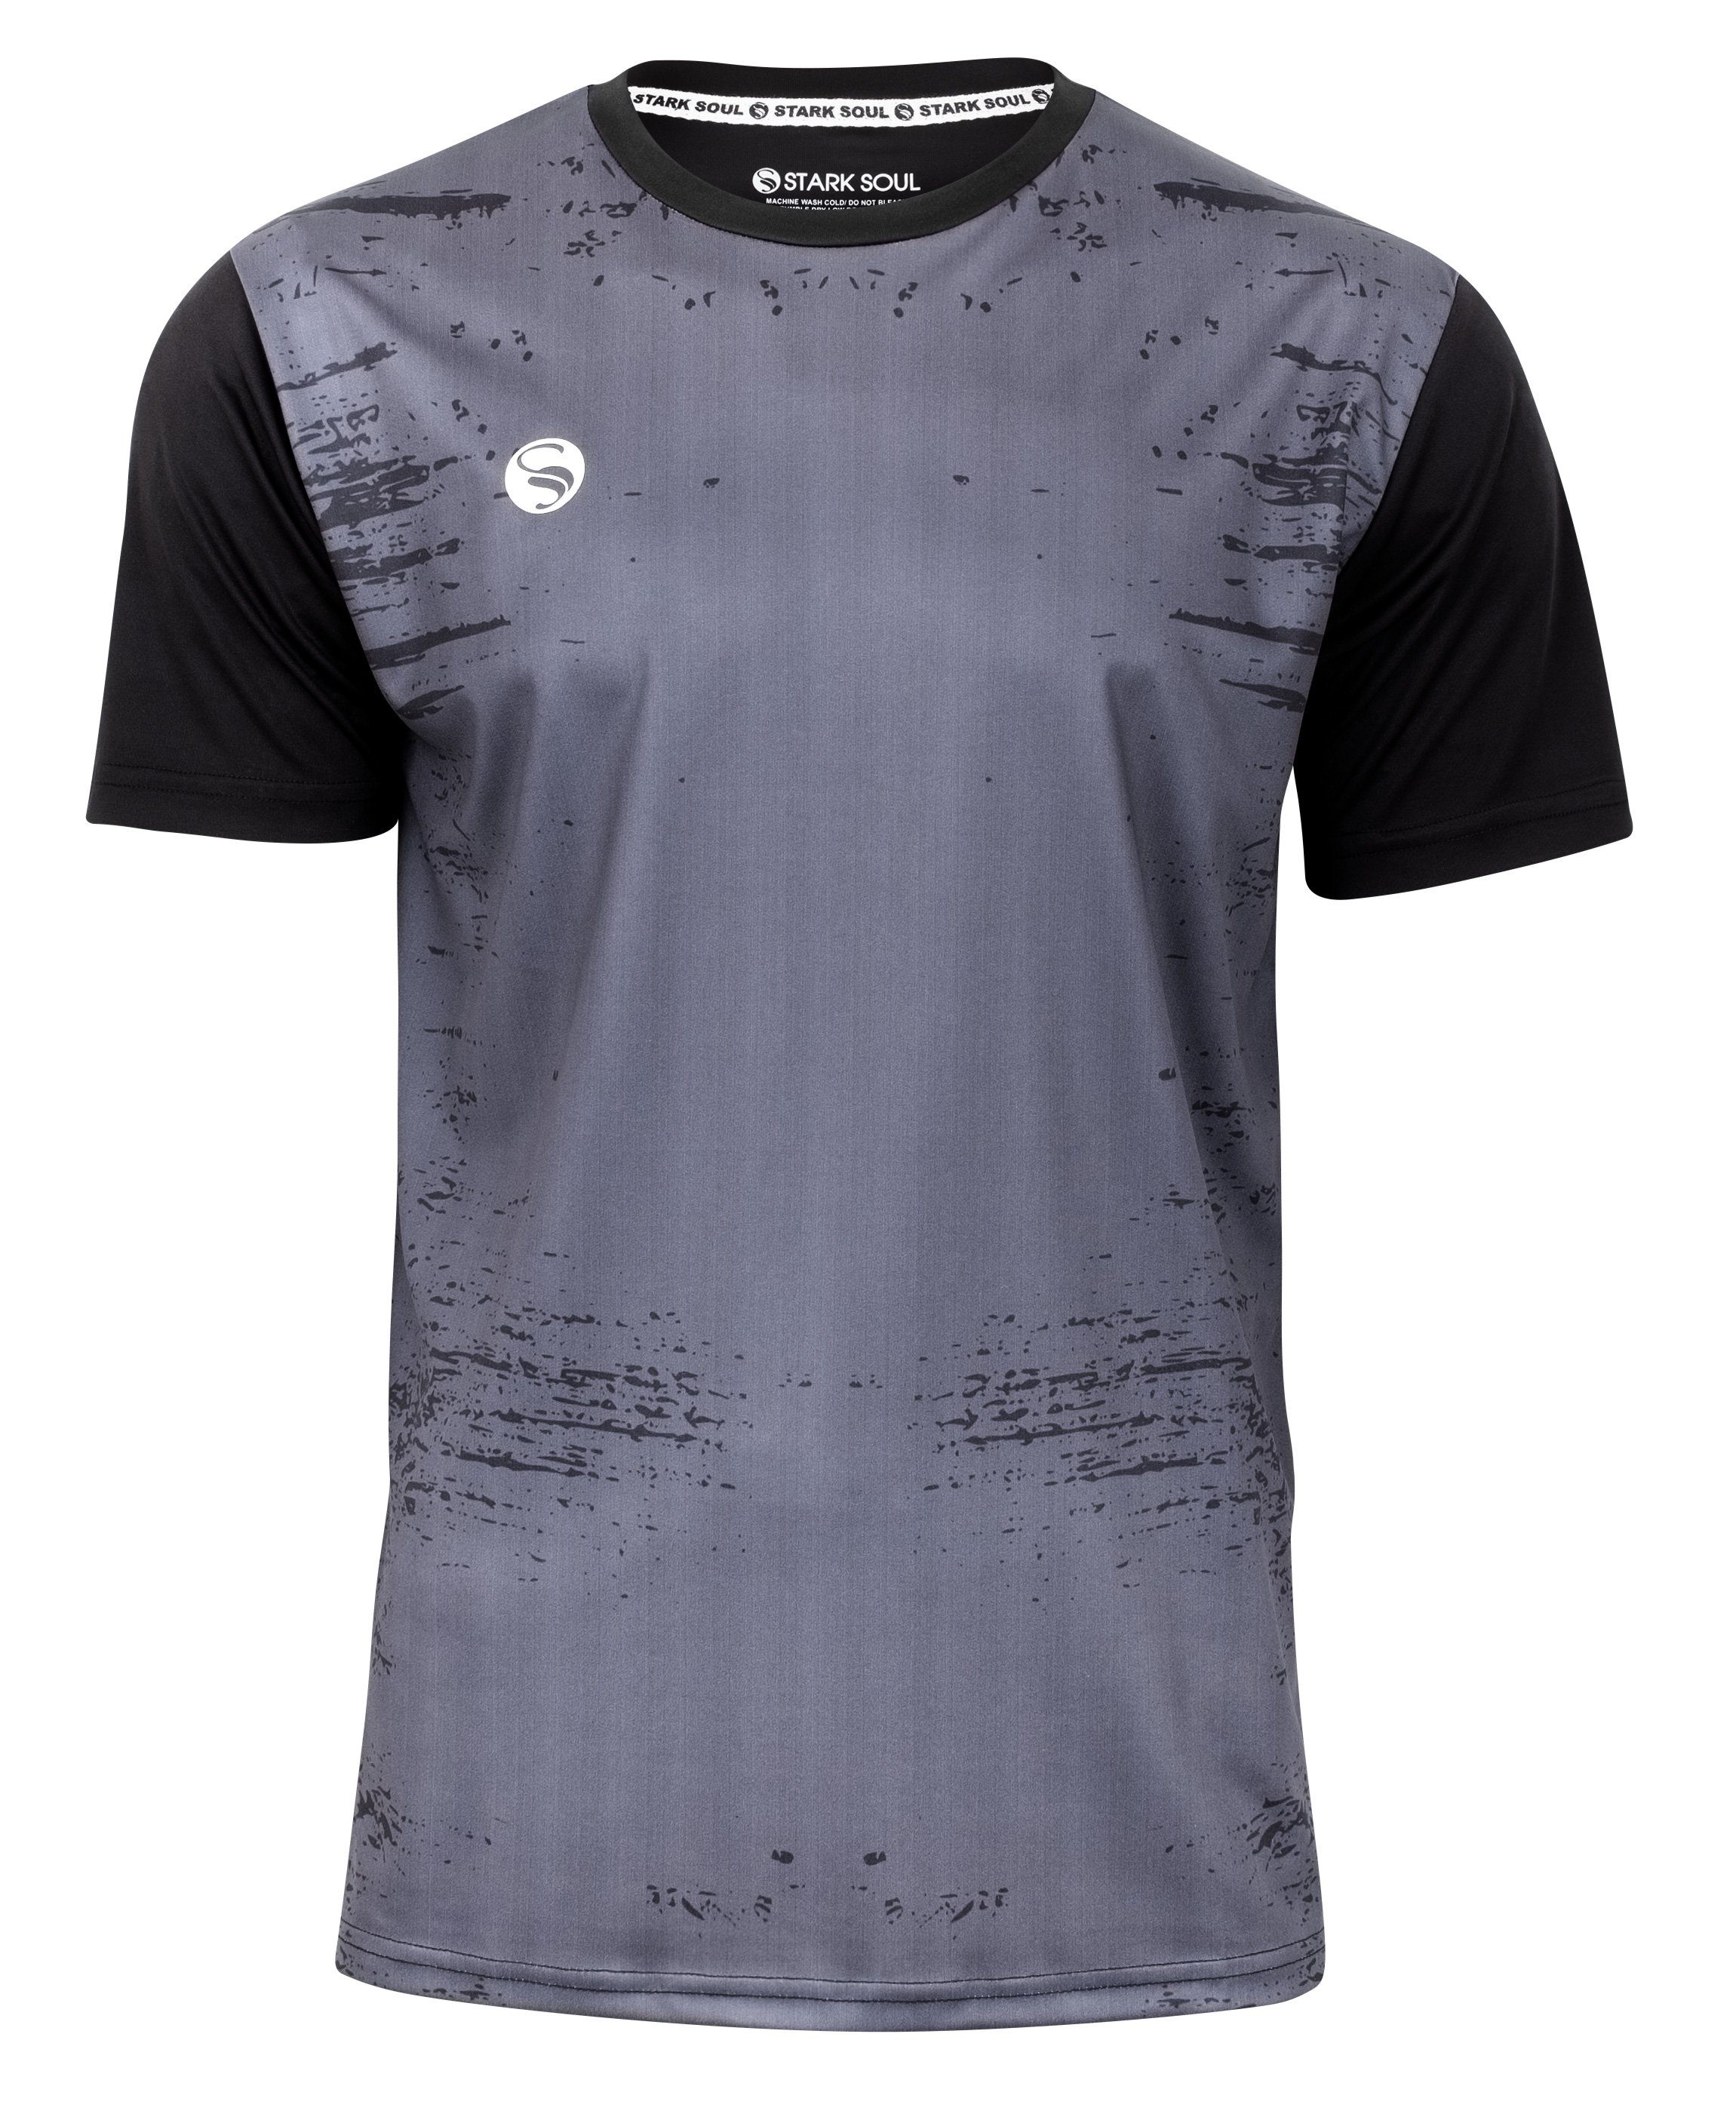 Stark Soul® T-Shirt Trainingsshirt Trikot "Stained"- T-Shirt, Herren Sport-Shirt, Kurzarm Dunkelgrau